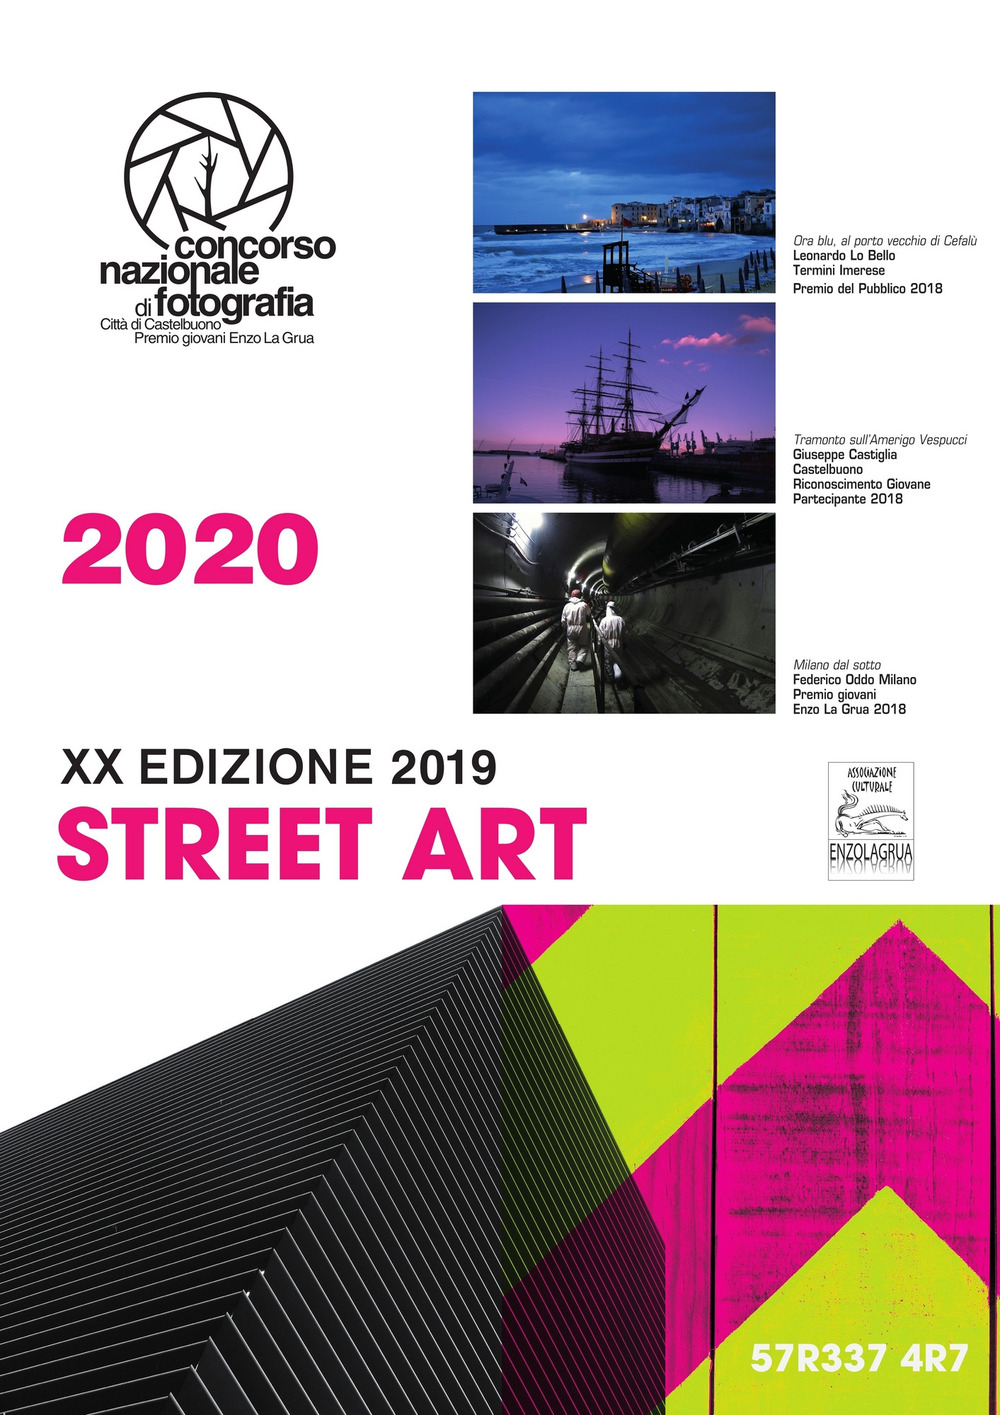 Street art. Concorso nazionale di fotografia Enzo La Grua 2020. Calendario 2020. Ediz. a spirale